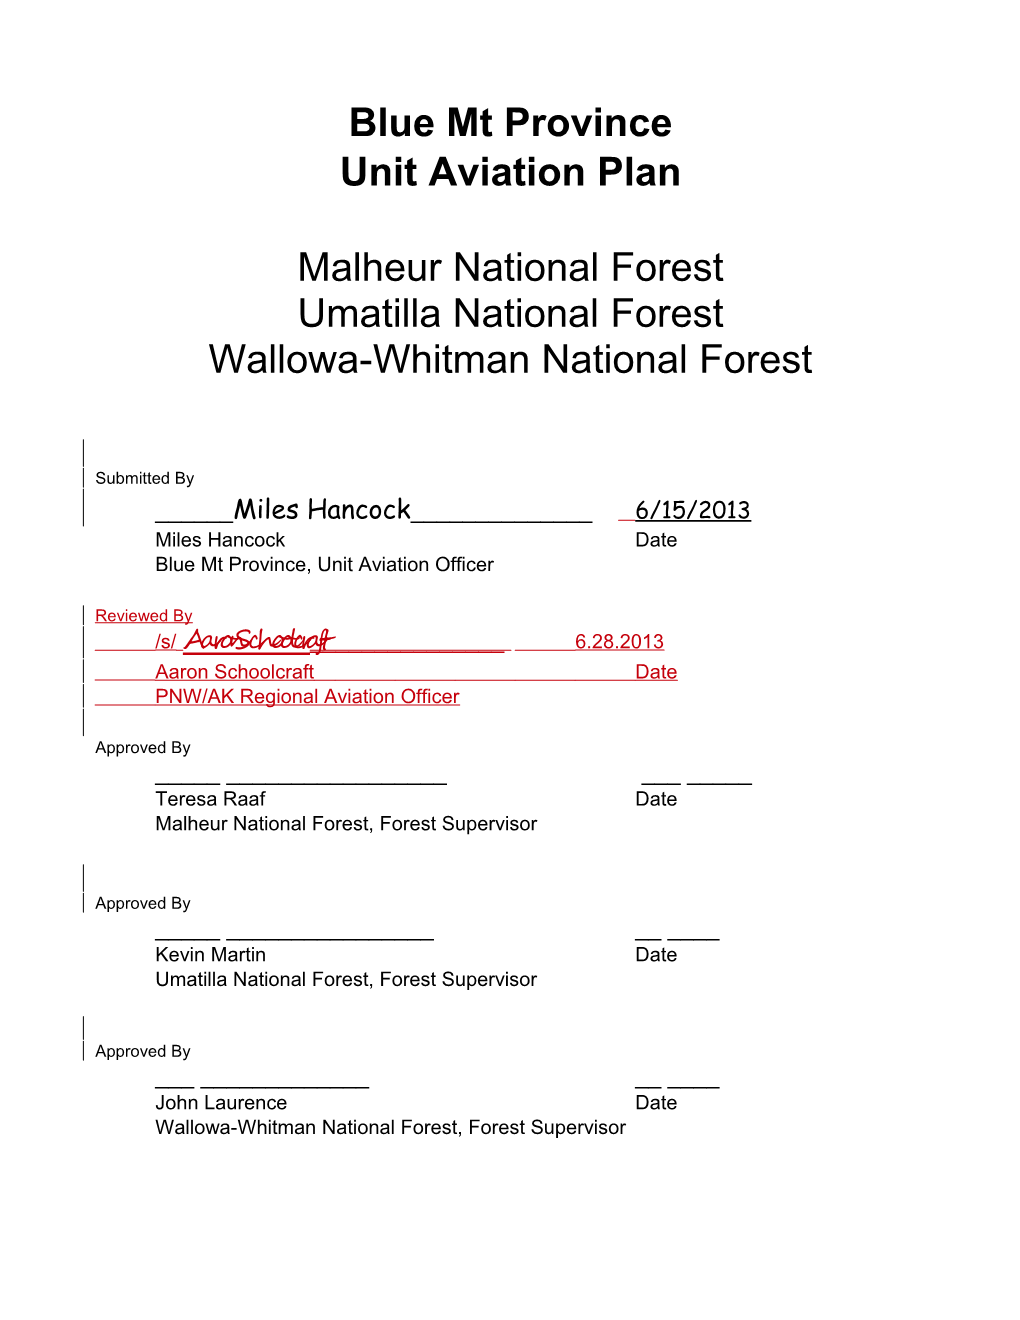 BMP Unit Aviation Plan / 2013